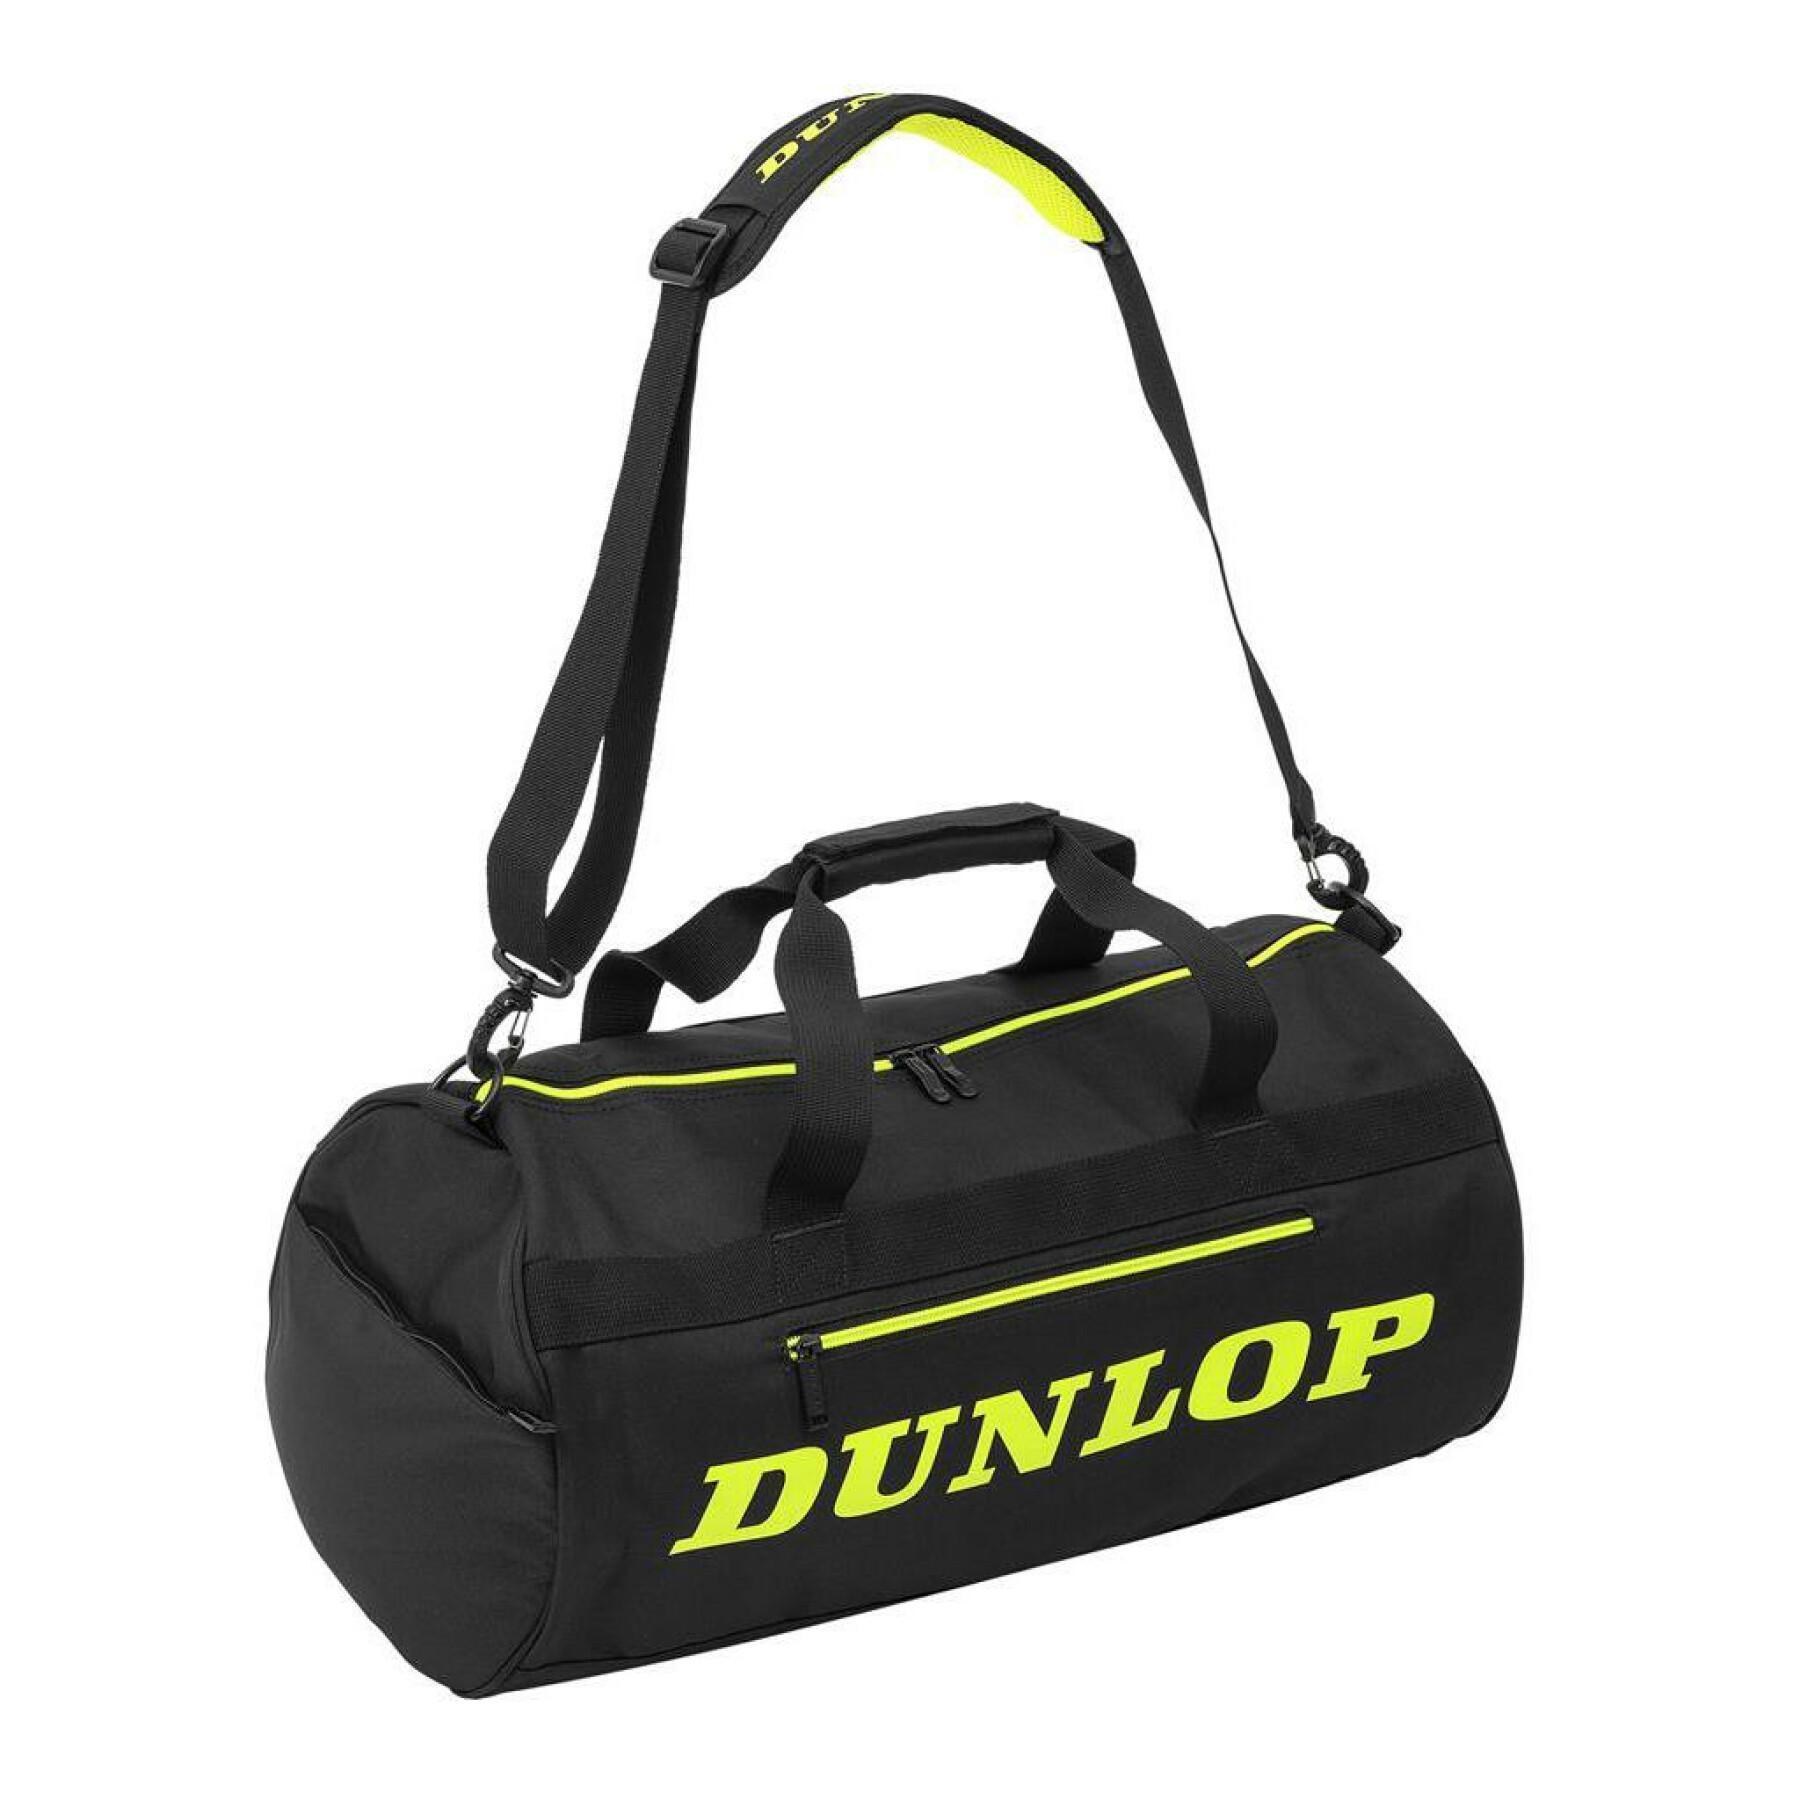 Racketväska Dunlop sx-performance duffle